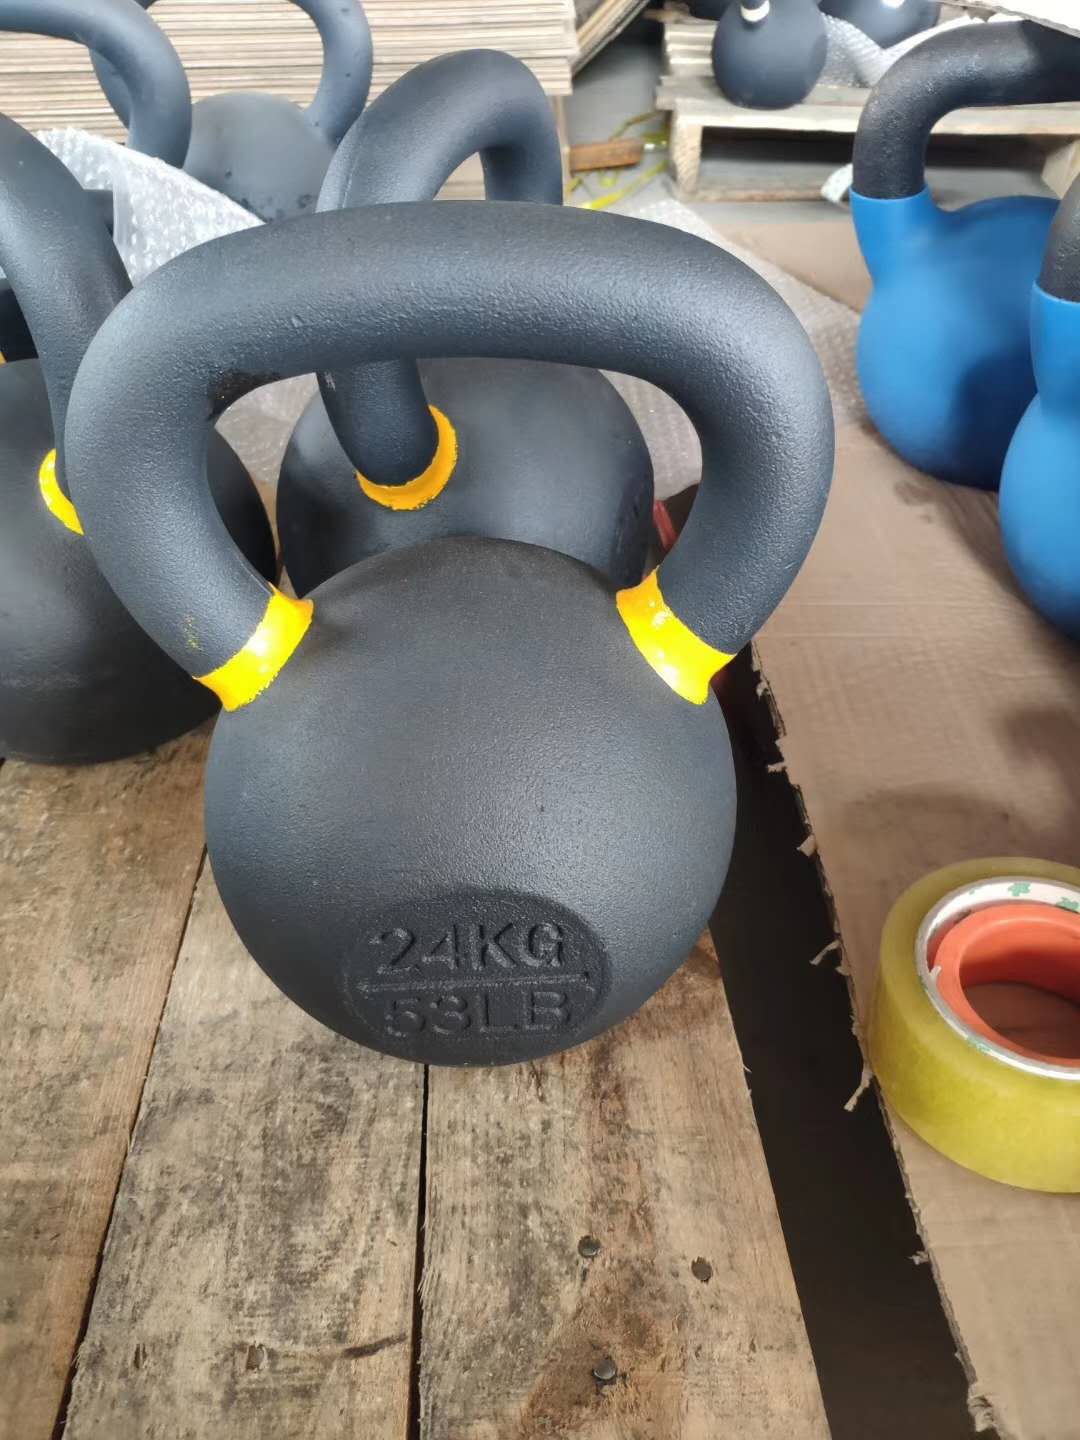 健身壶铃家用健身房用的壶铃 其他健身器材4